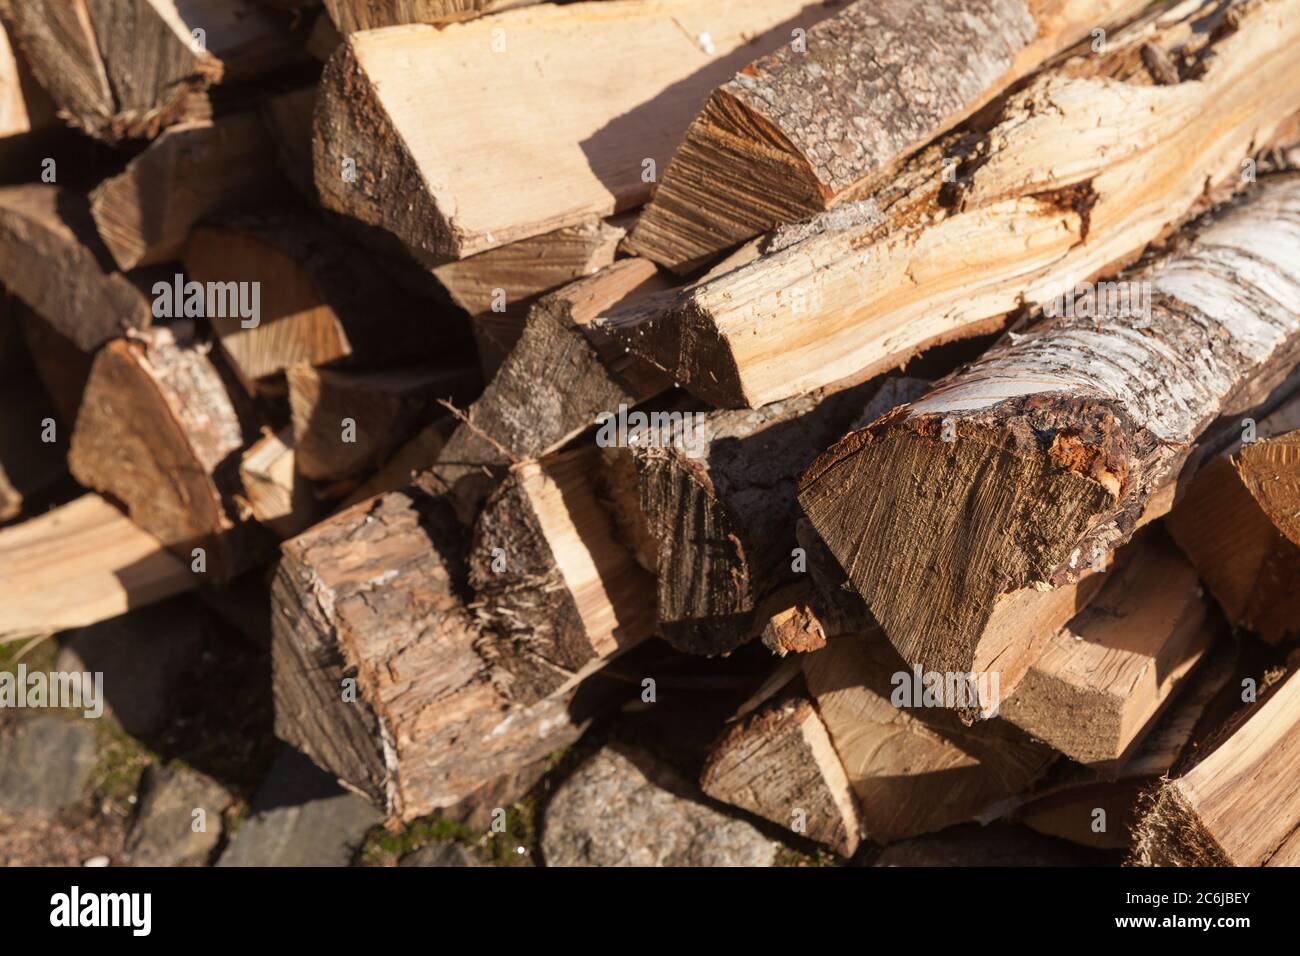 Stapel von Brennholz, Birkenkeile lagen gestapelt, Außenfoto Stockfoto